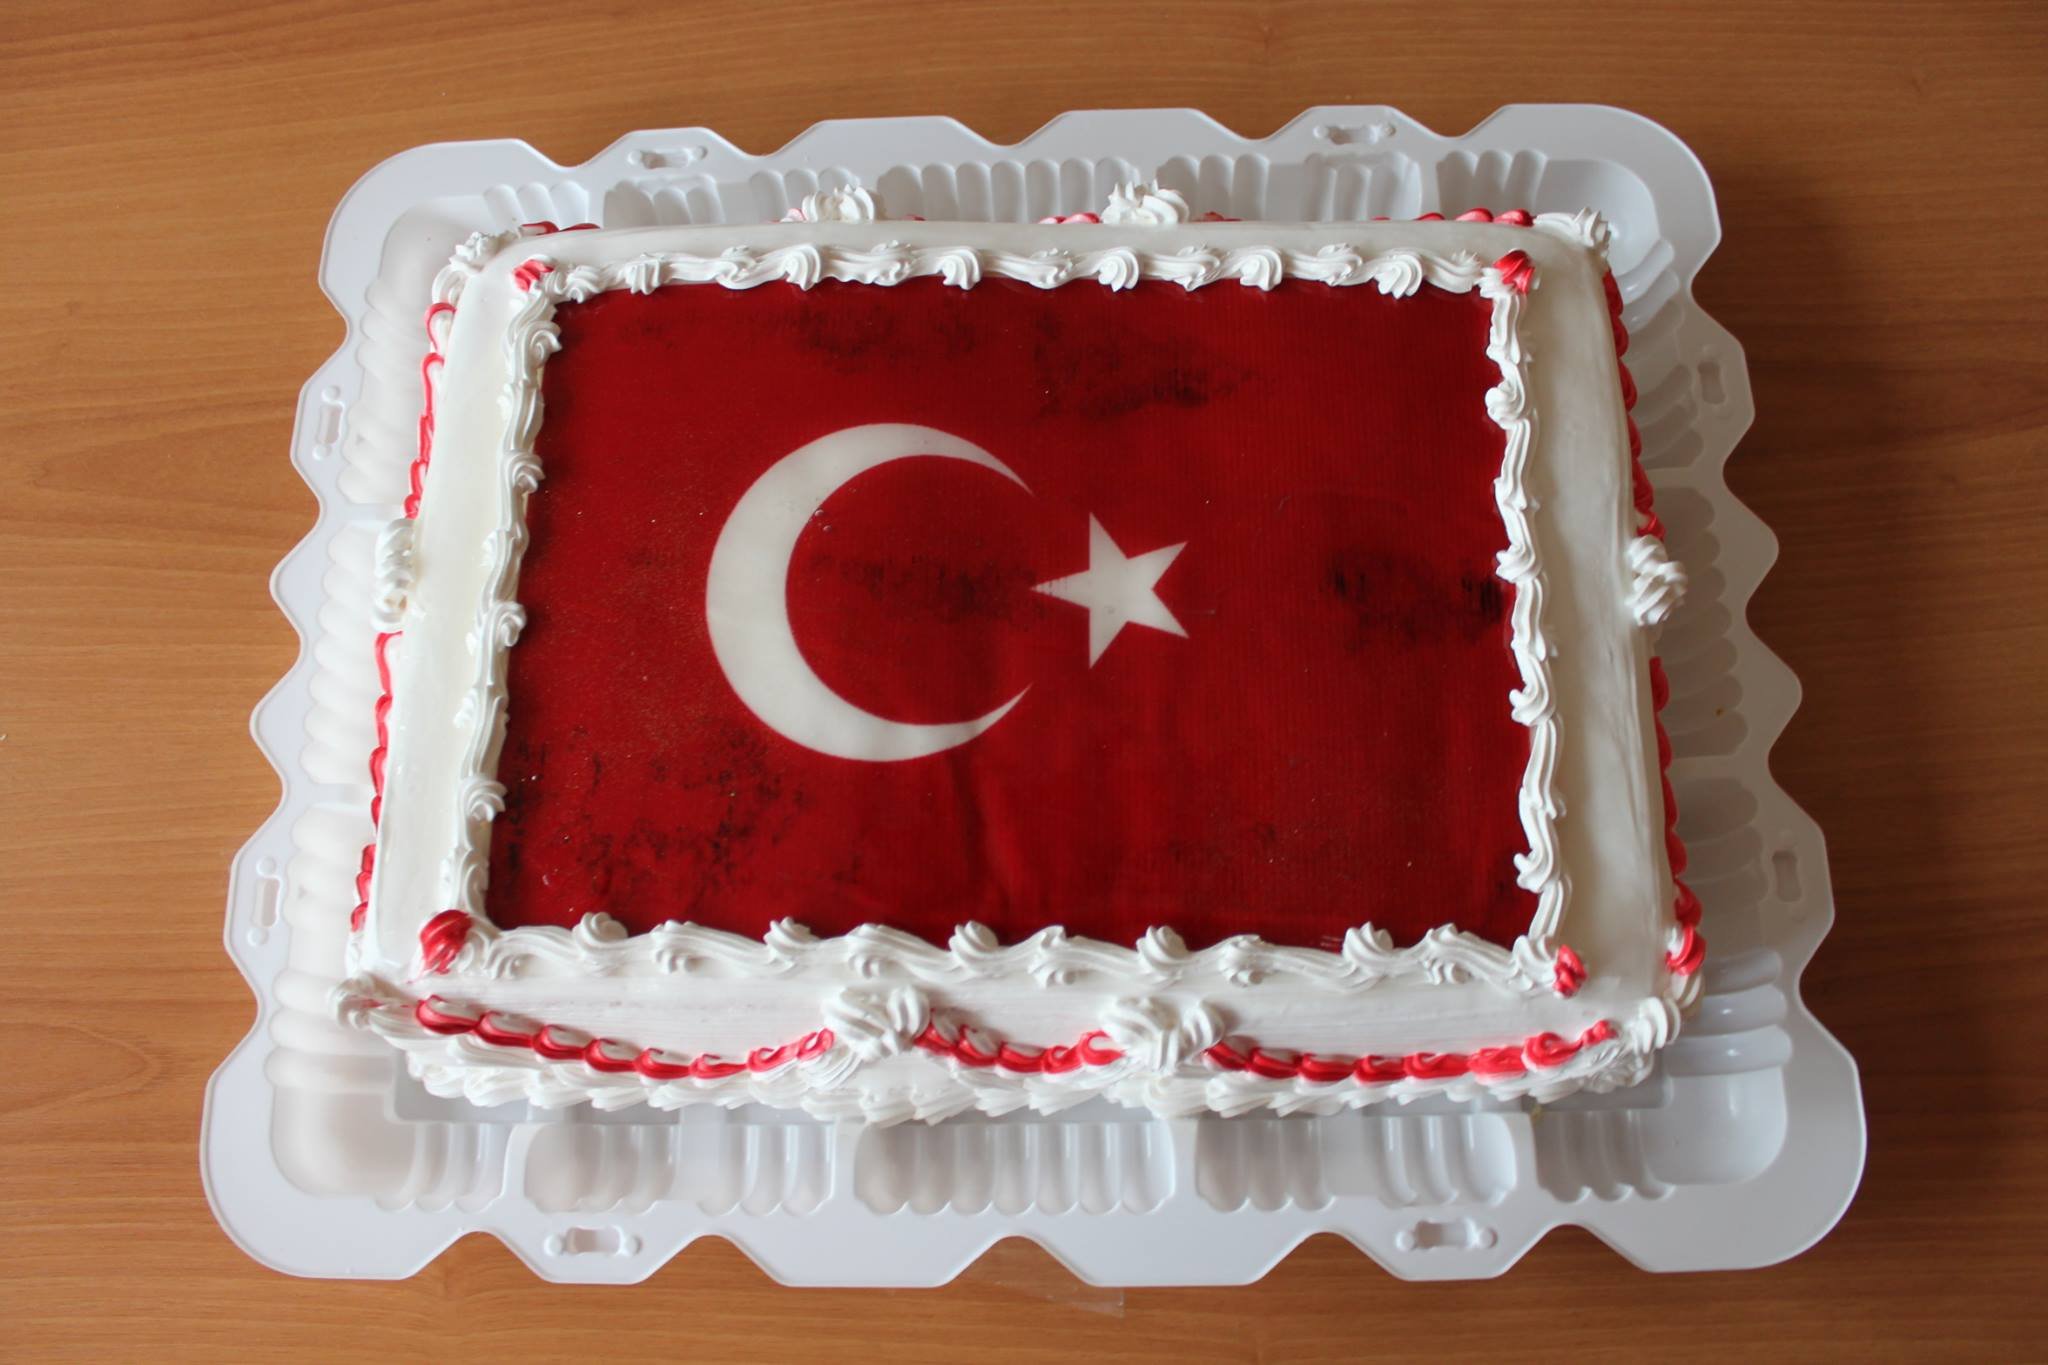 Поздравление с днем рождения на турецком